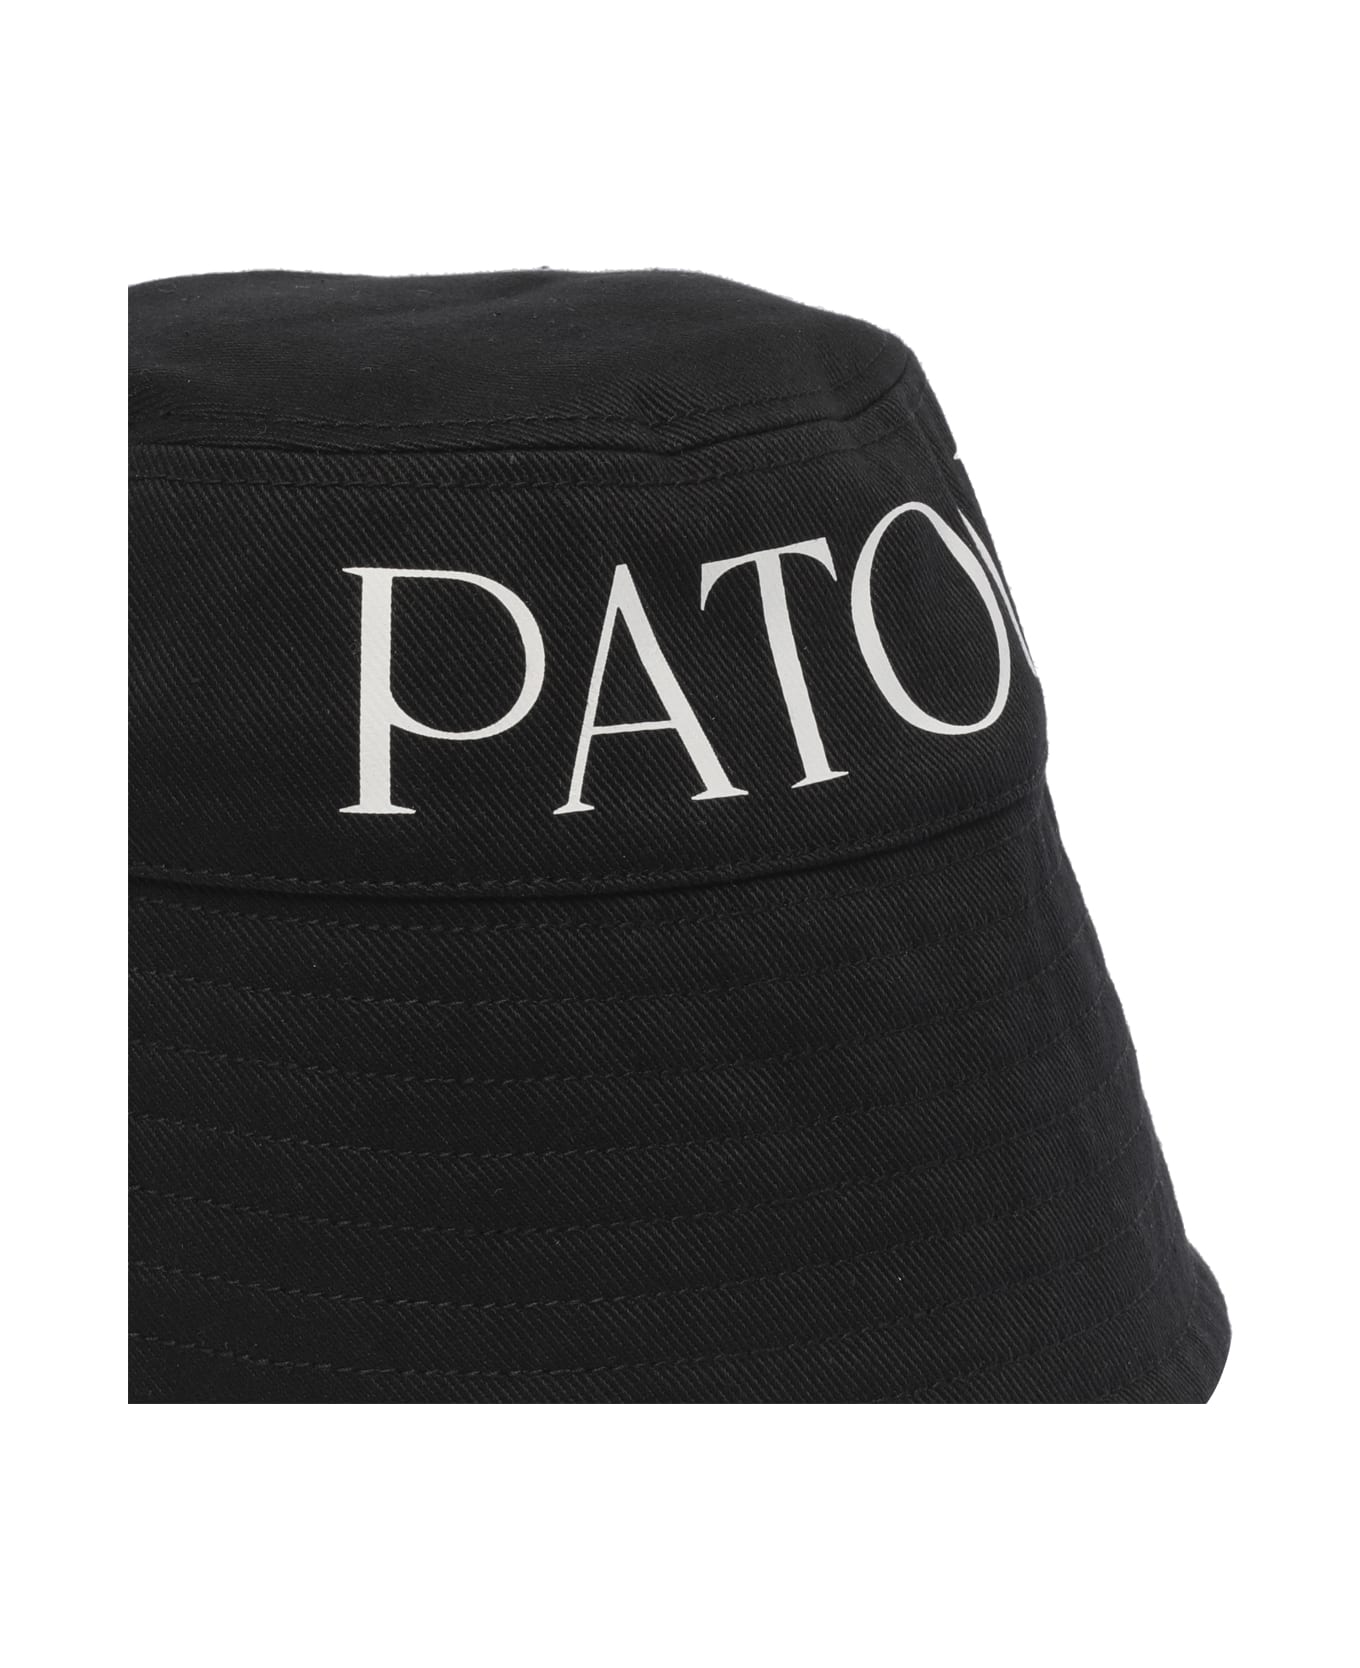 Patou Bucket Hat - BLACK